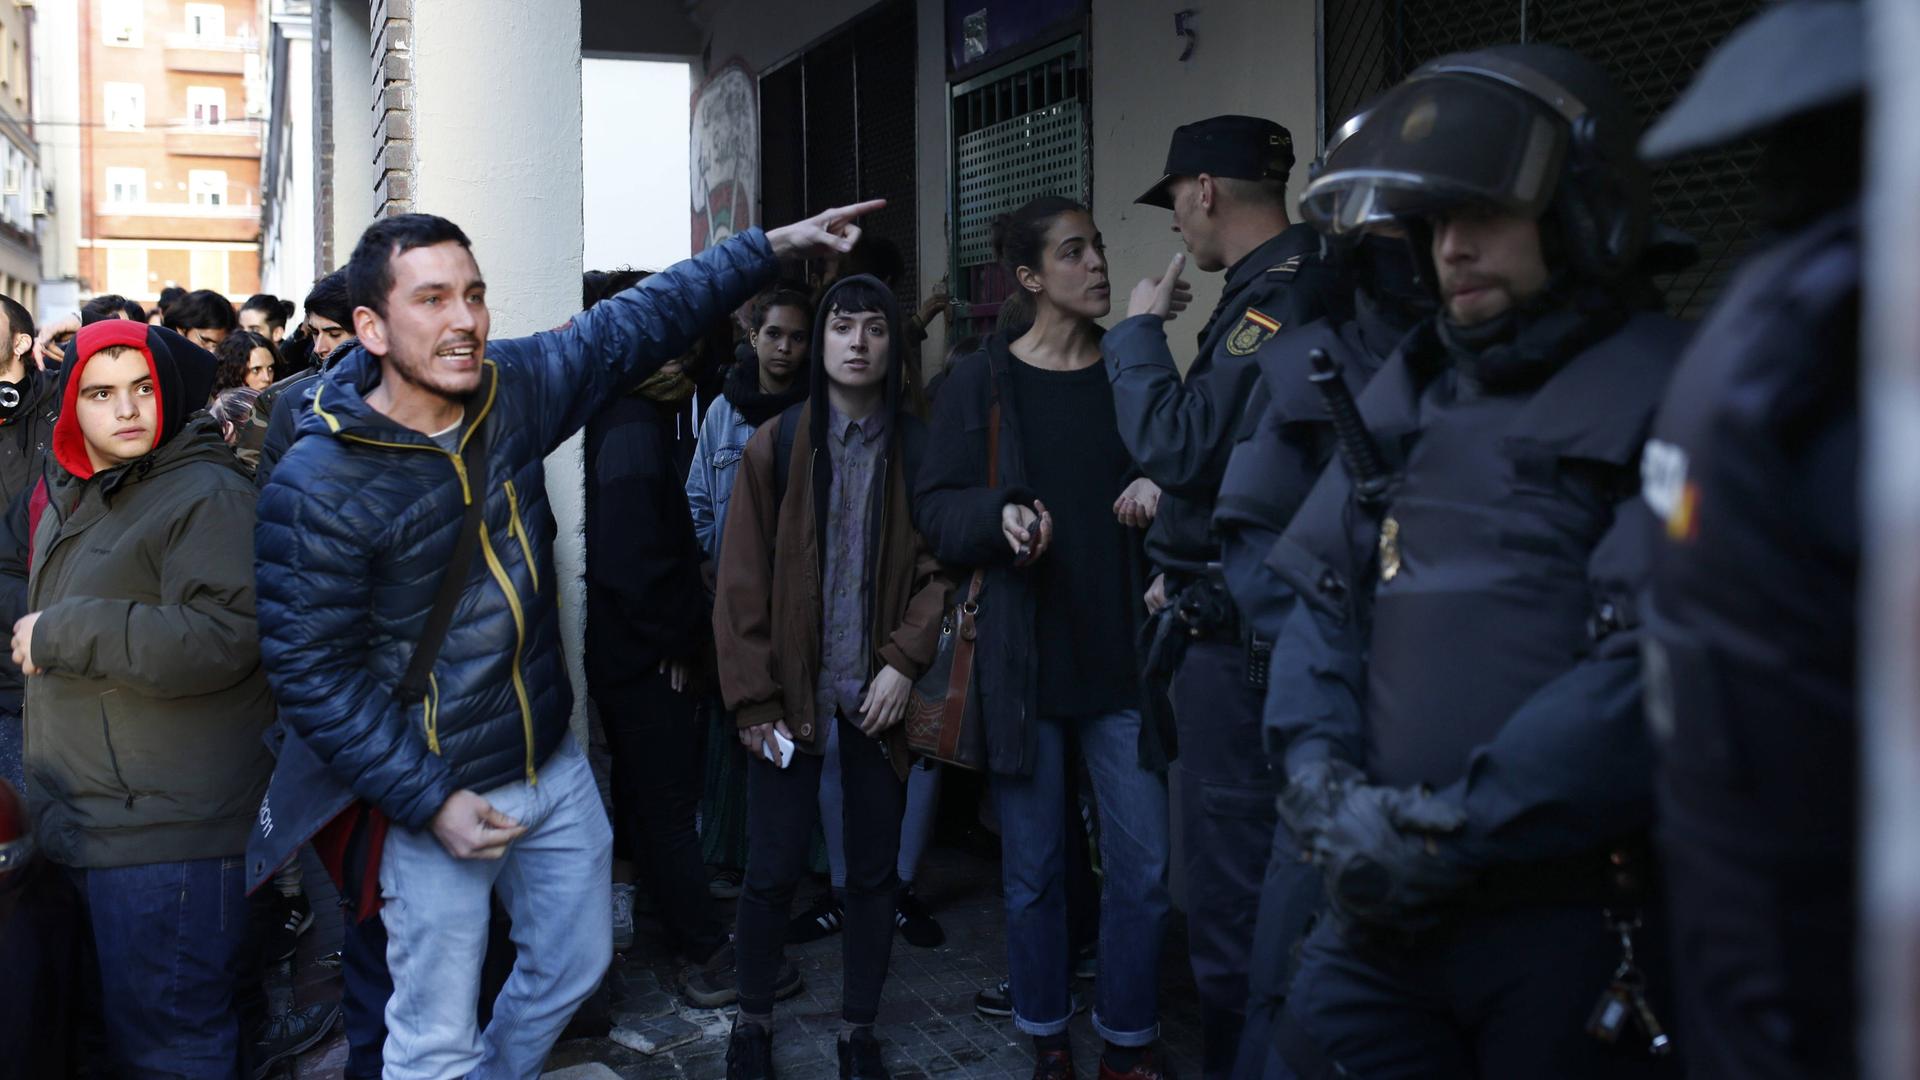 Räumung eines besetzten Hauses in Madrid 2016